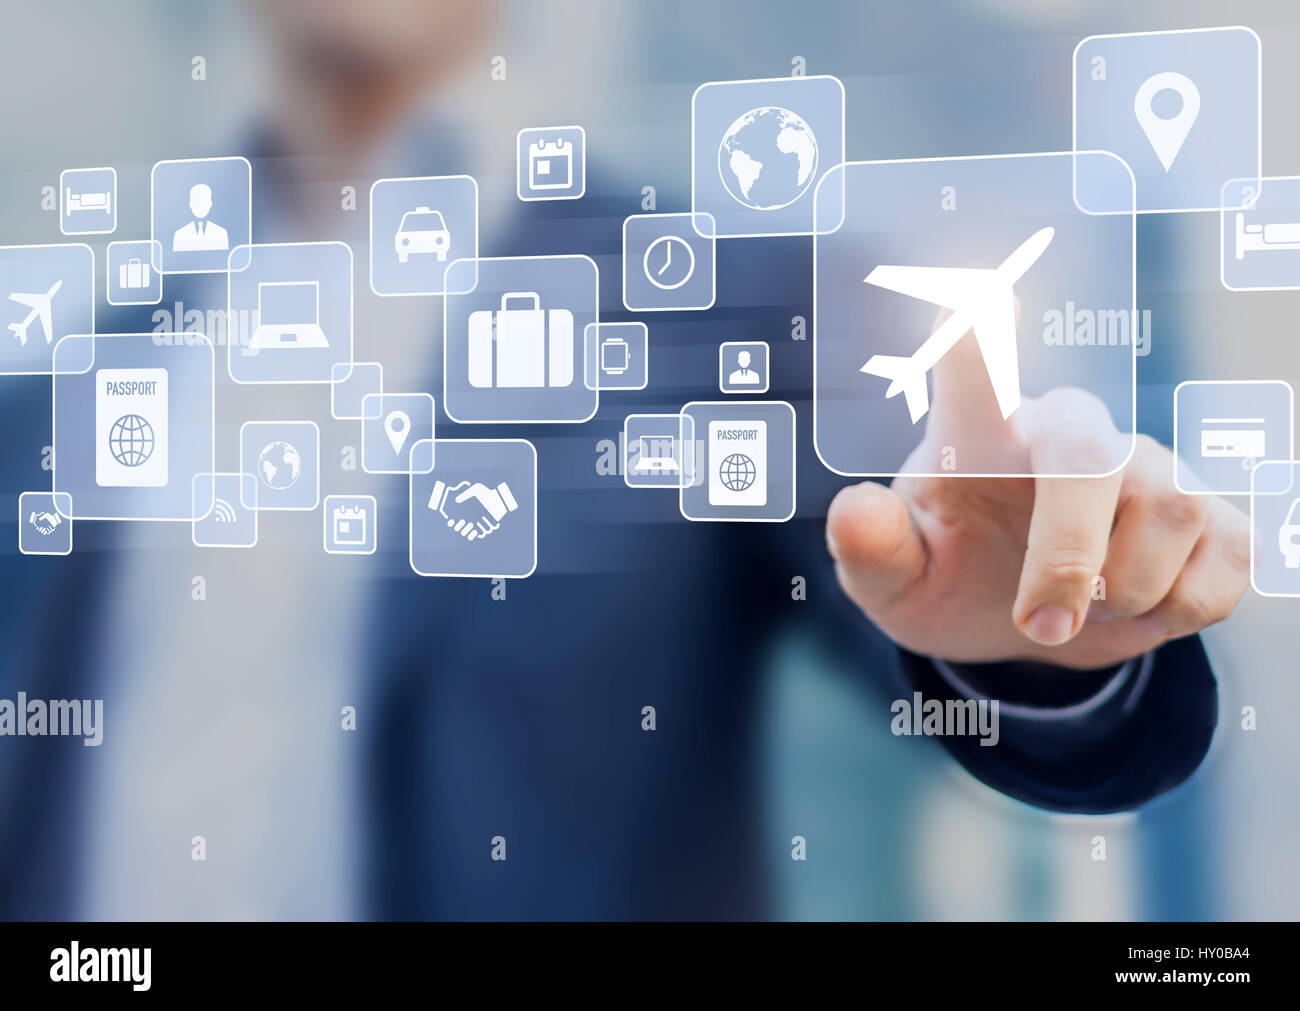 En voyage d'affaires, concept avec un businessman de toucher un bouton sur un écran avec des icônes sur la planification de voyage, transport, hotel, vol et de passeport Banque D'Images